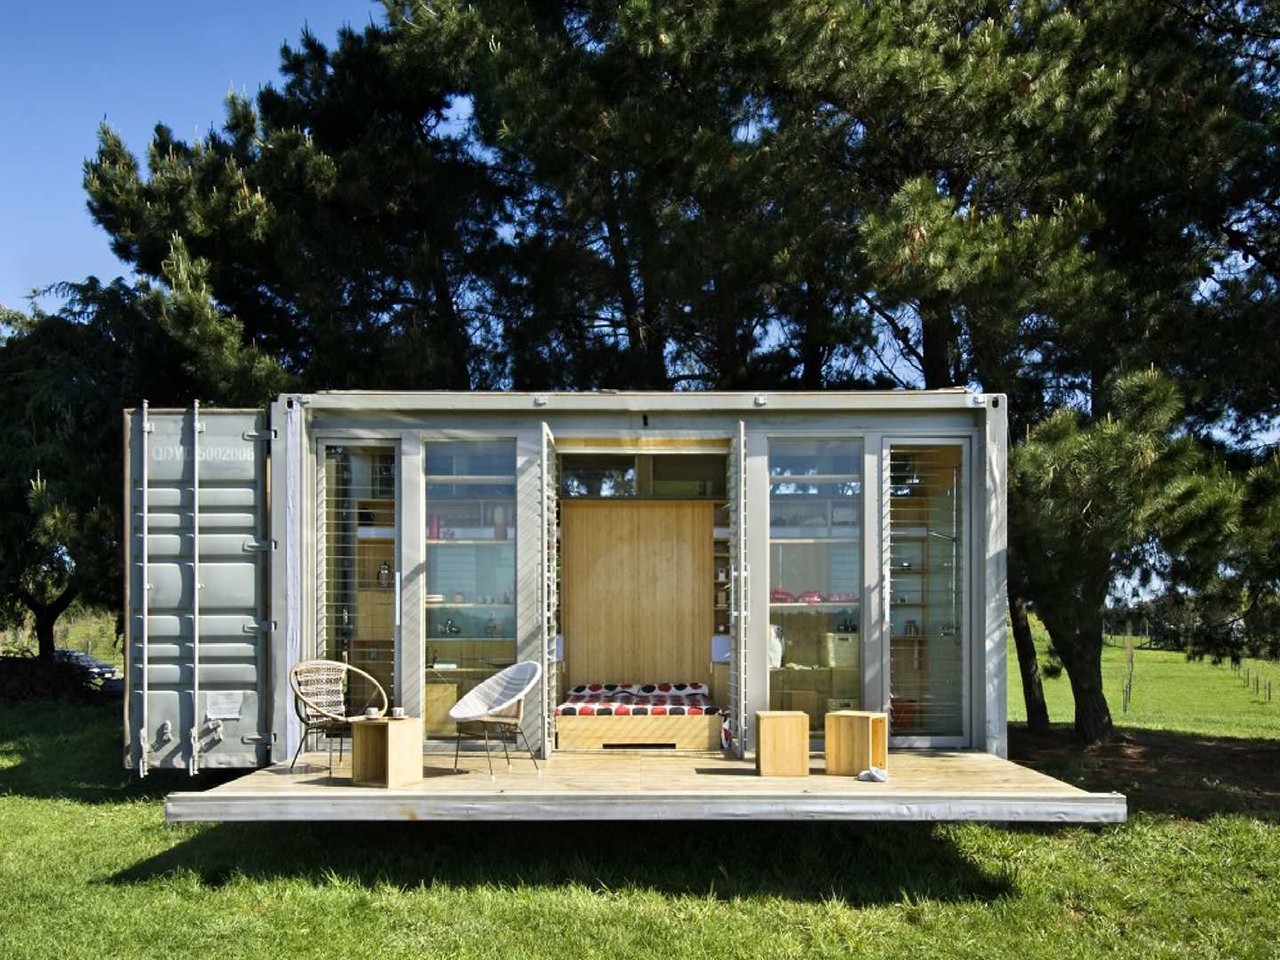 
Một ngôi nhà container nhỏ xinh giữa cánh đồng cỏ xanh
